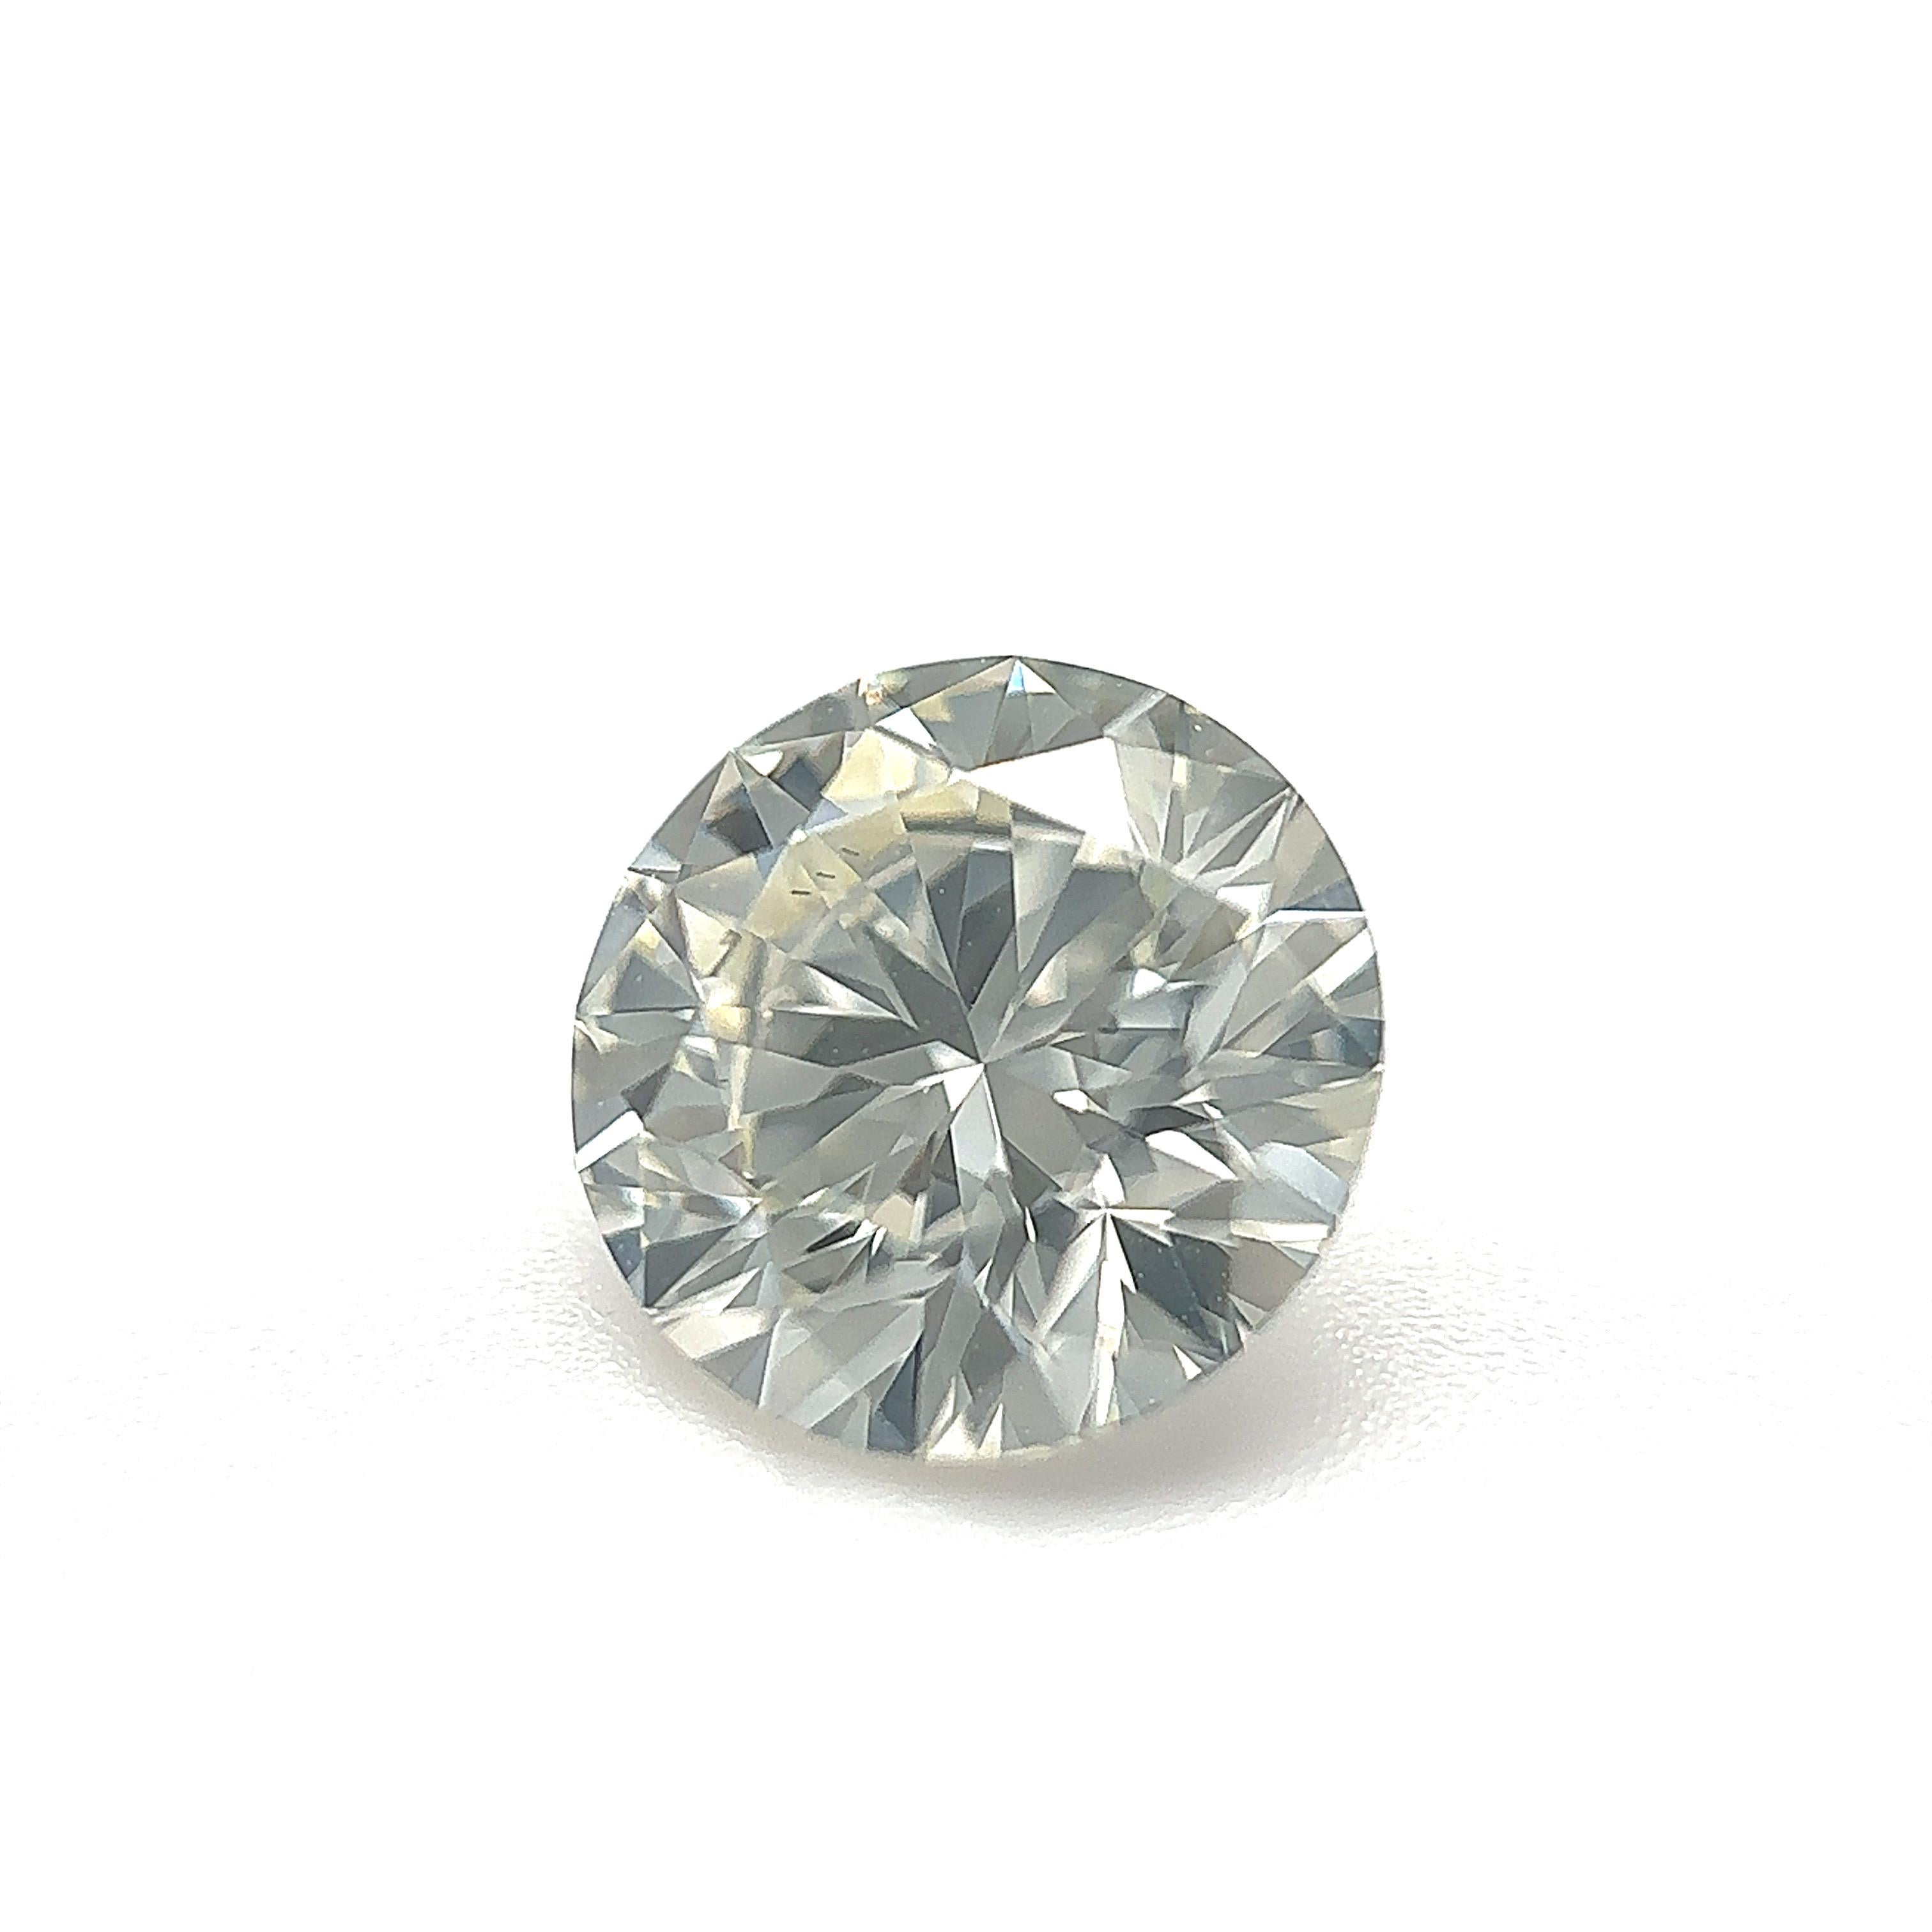 GIA Certified 1.51 Carat Round Brilliant Natural Diamond Loose Stone (Customization Option)

Couleur : K.
Clarté : VS1 

Idéal pour les bagues de fiançailles, les alliances, les colliers et les boucles d'oreilles en diamant. Contactez-nous pour